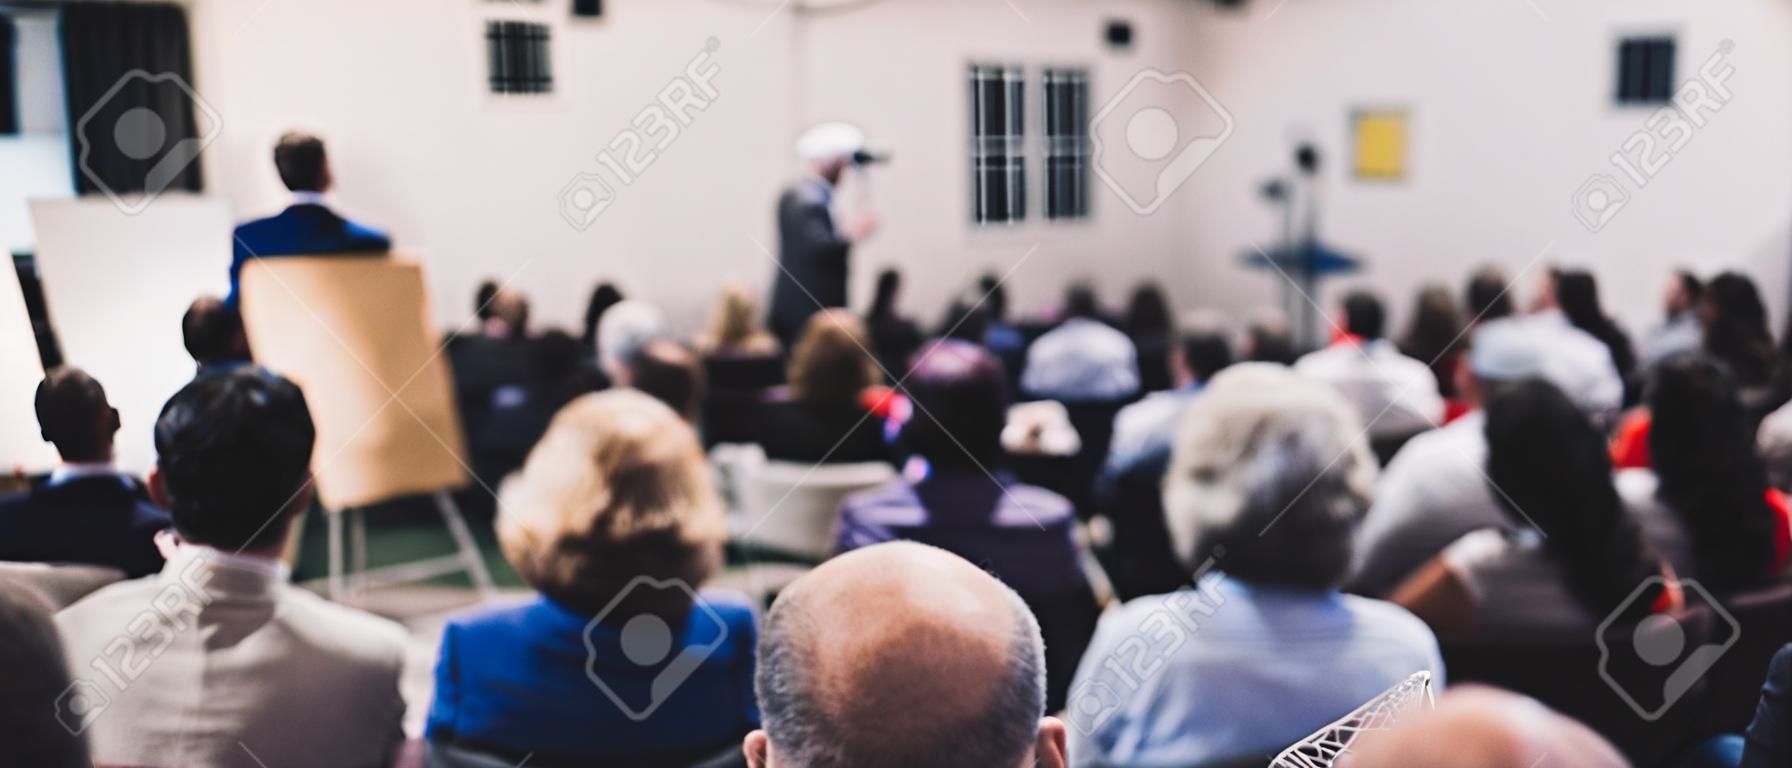 Simposio de empresa y emprendimiento. orador dando una charla en una reunión de negocios. audiencia en la sala de conferencias. vista trasera de un participante no reconocido en la audiencia.